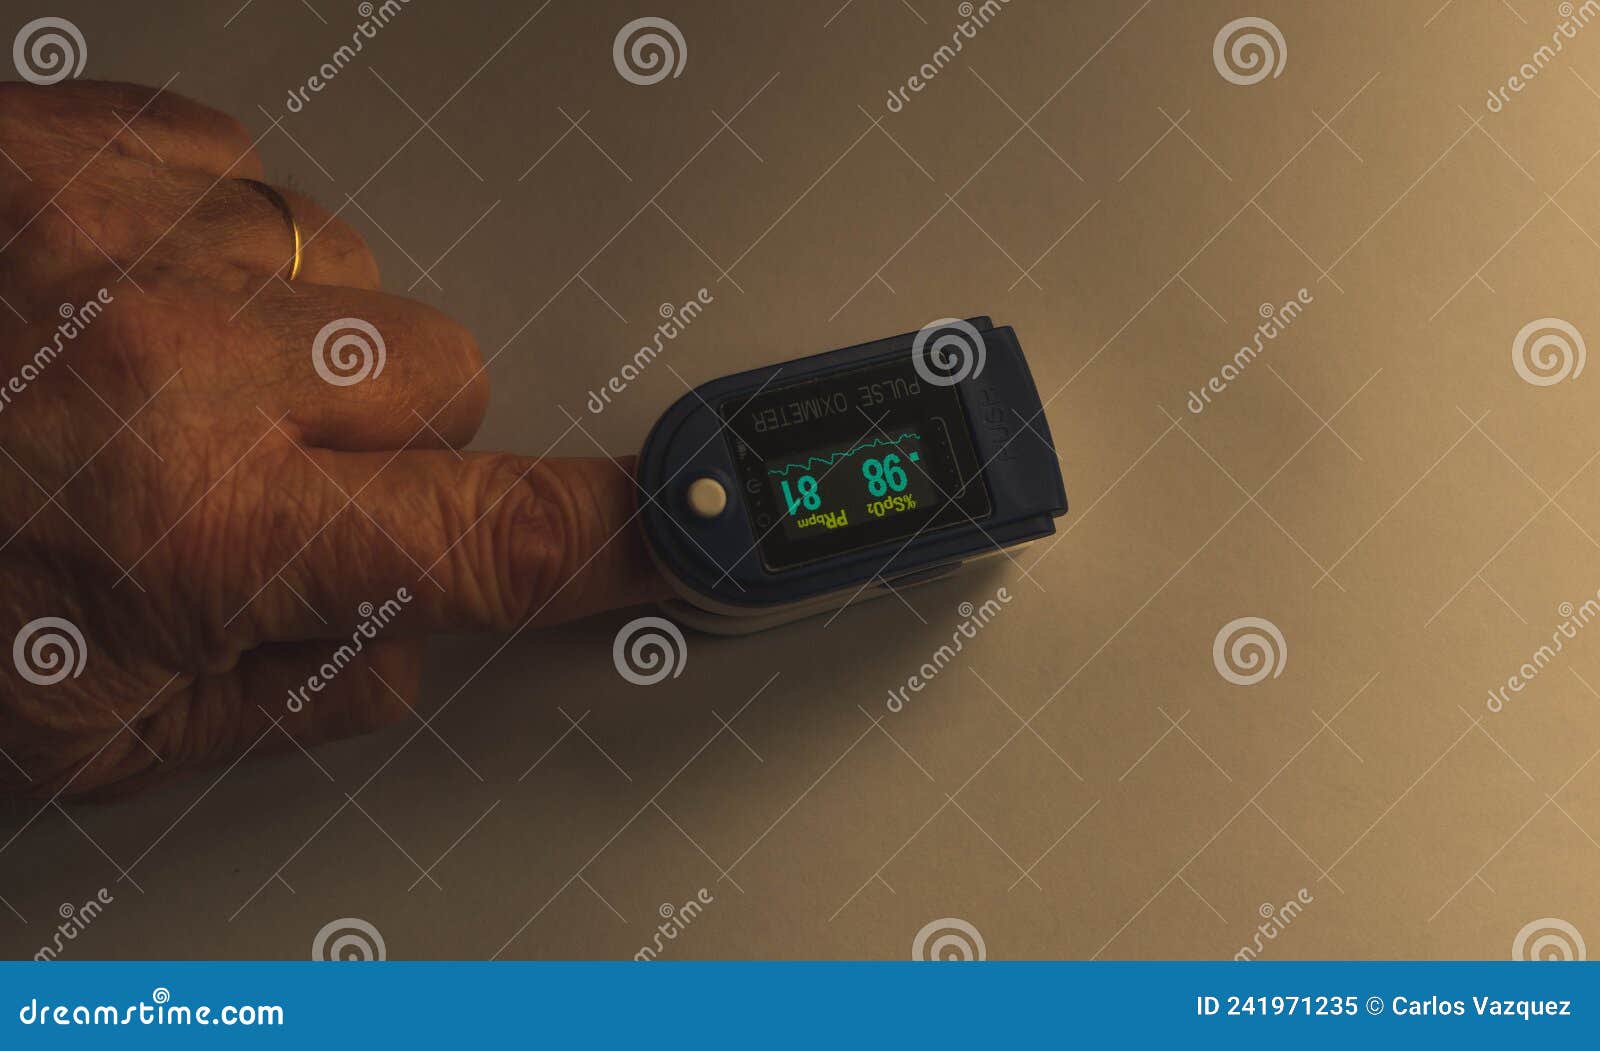 pulse oximeter on the finger